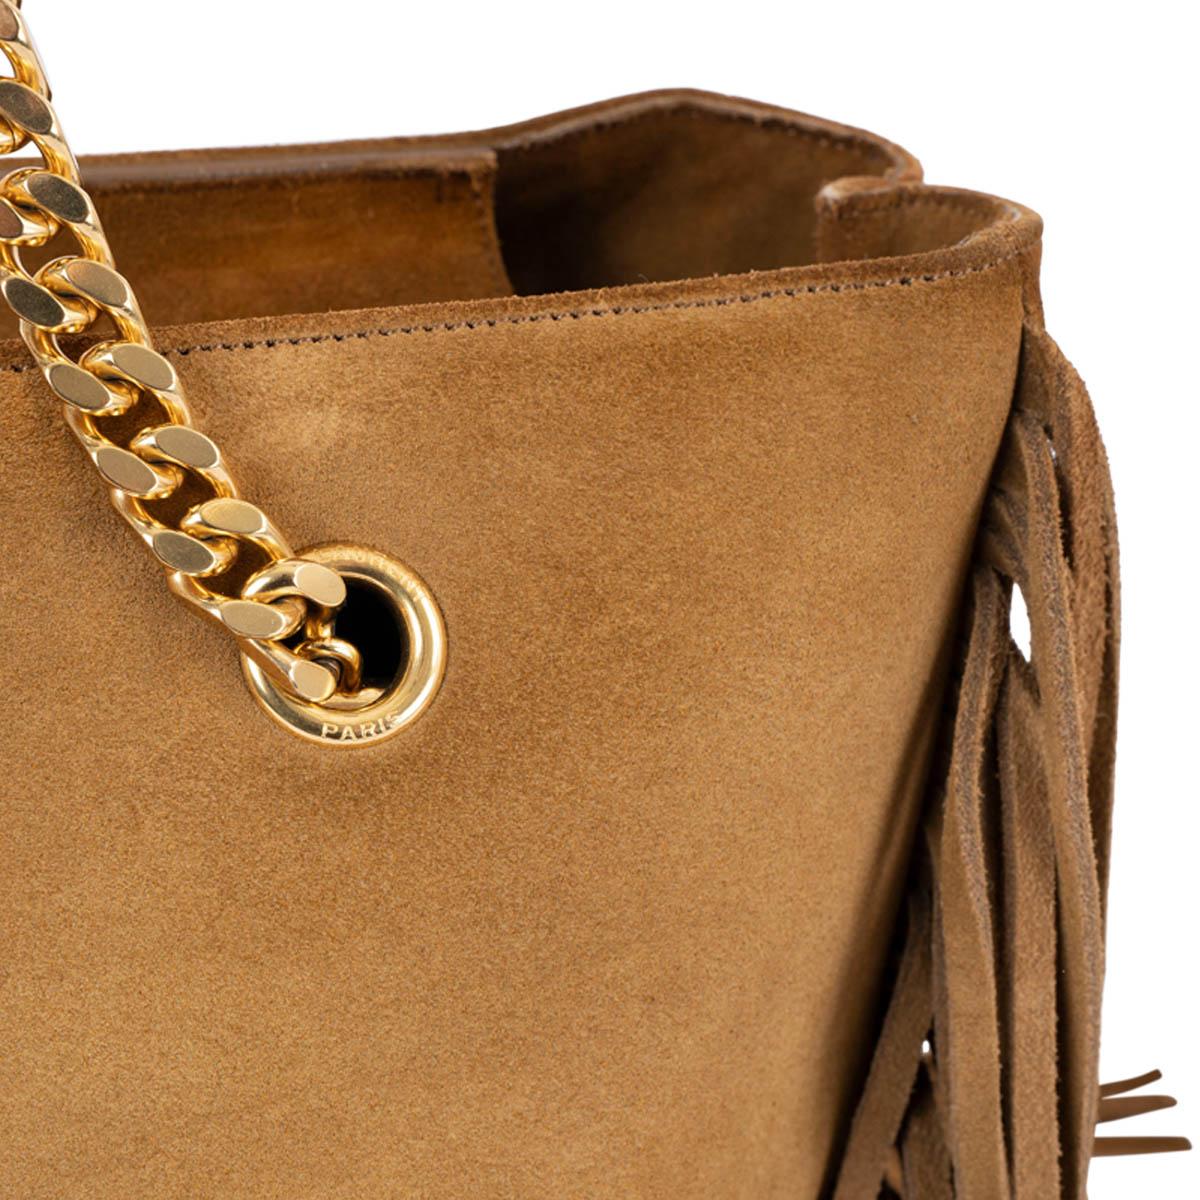 SAINT LAURENT tan beige suede MONOGRAM FRINGE CHAIN STRAP Shopper Bag For Sale 6